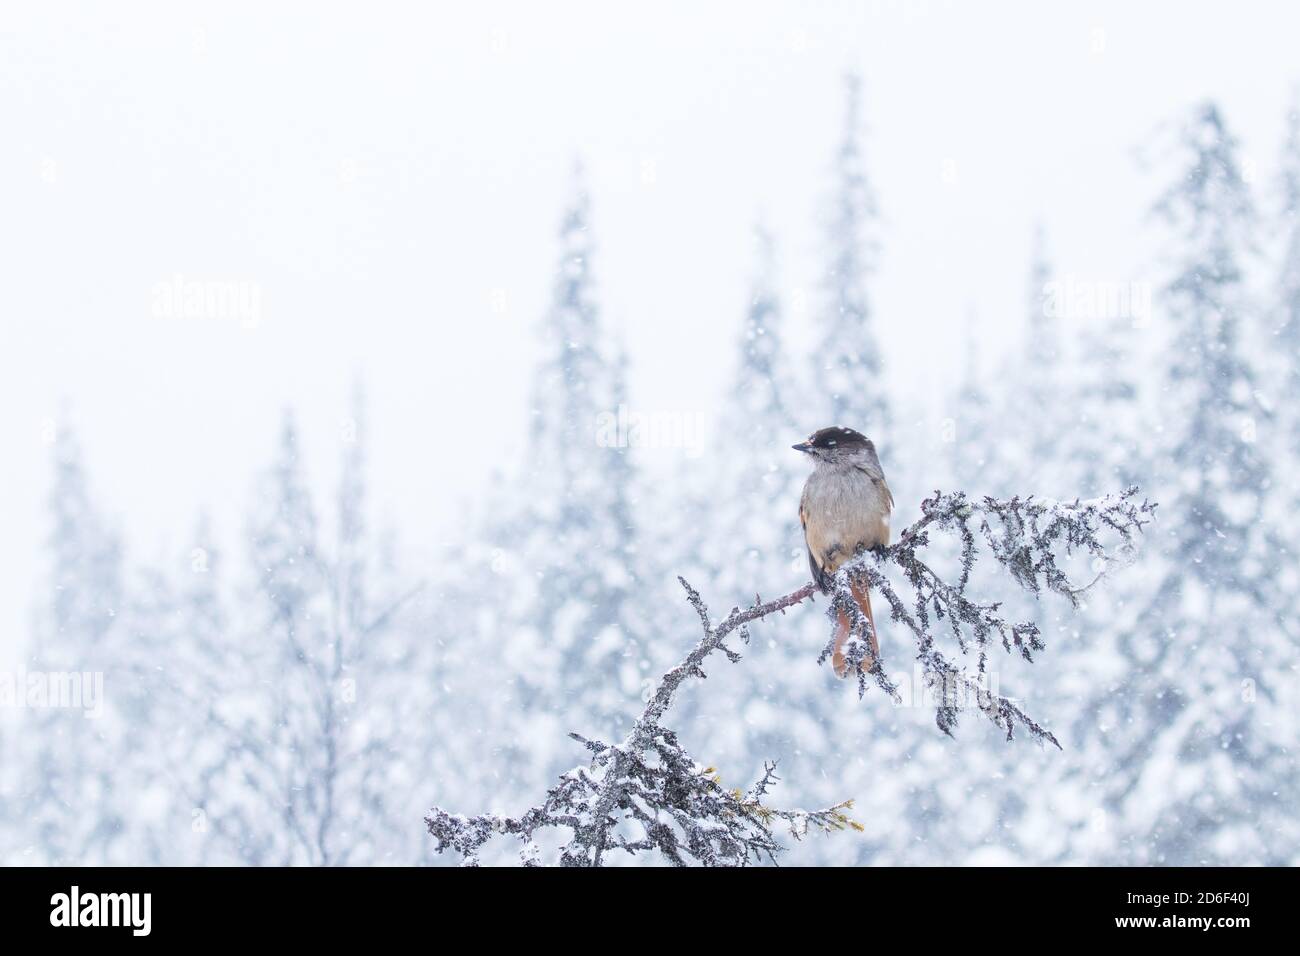 Mignon geai de Sibérie, Perisoreus infaustus, pendant une forte chute de neige dans une forêt froide de taïga, pays merveilleux d'hiver de la Laponie finlandaise, Europe du Nord. Banque D'Images